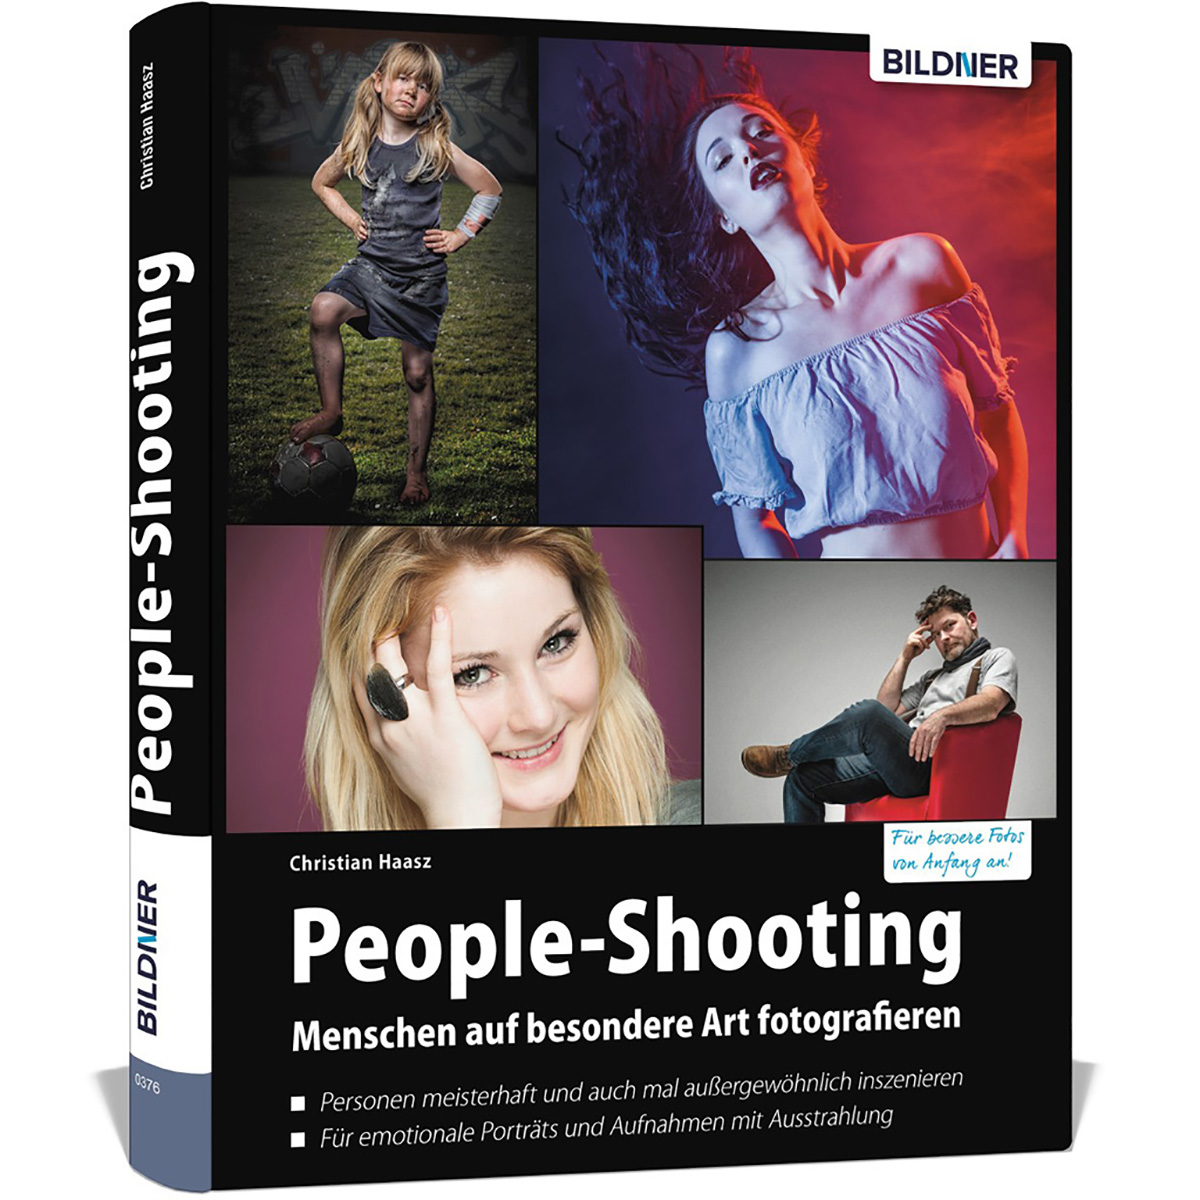 fotografieren besondere - People-Shooting auf Menschen Art